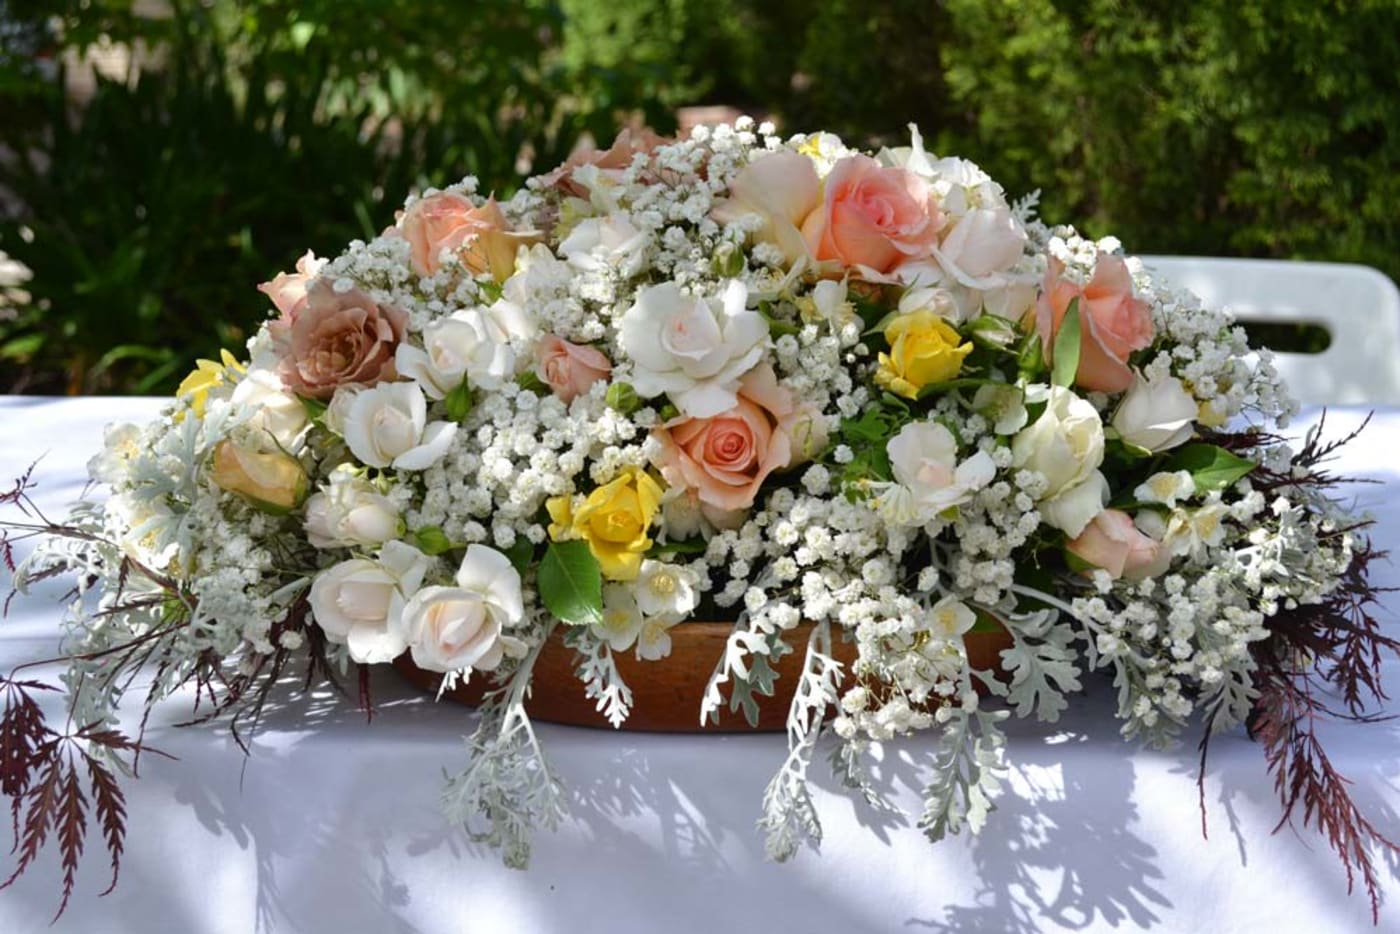 Wedding bouquet made from garden flowers